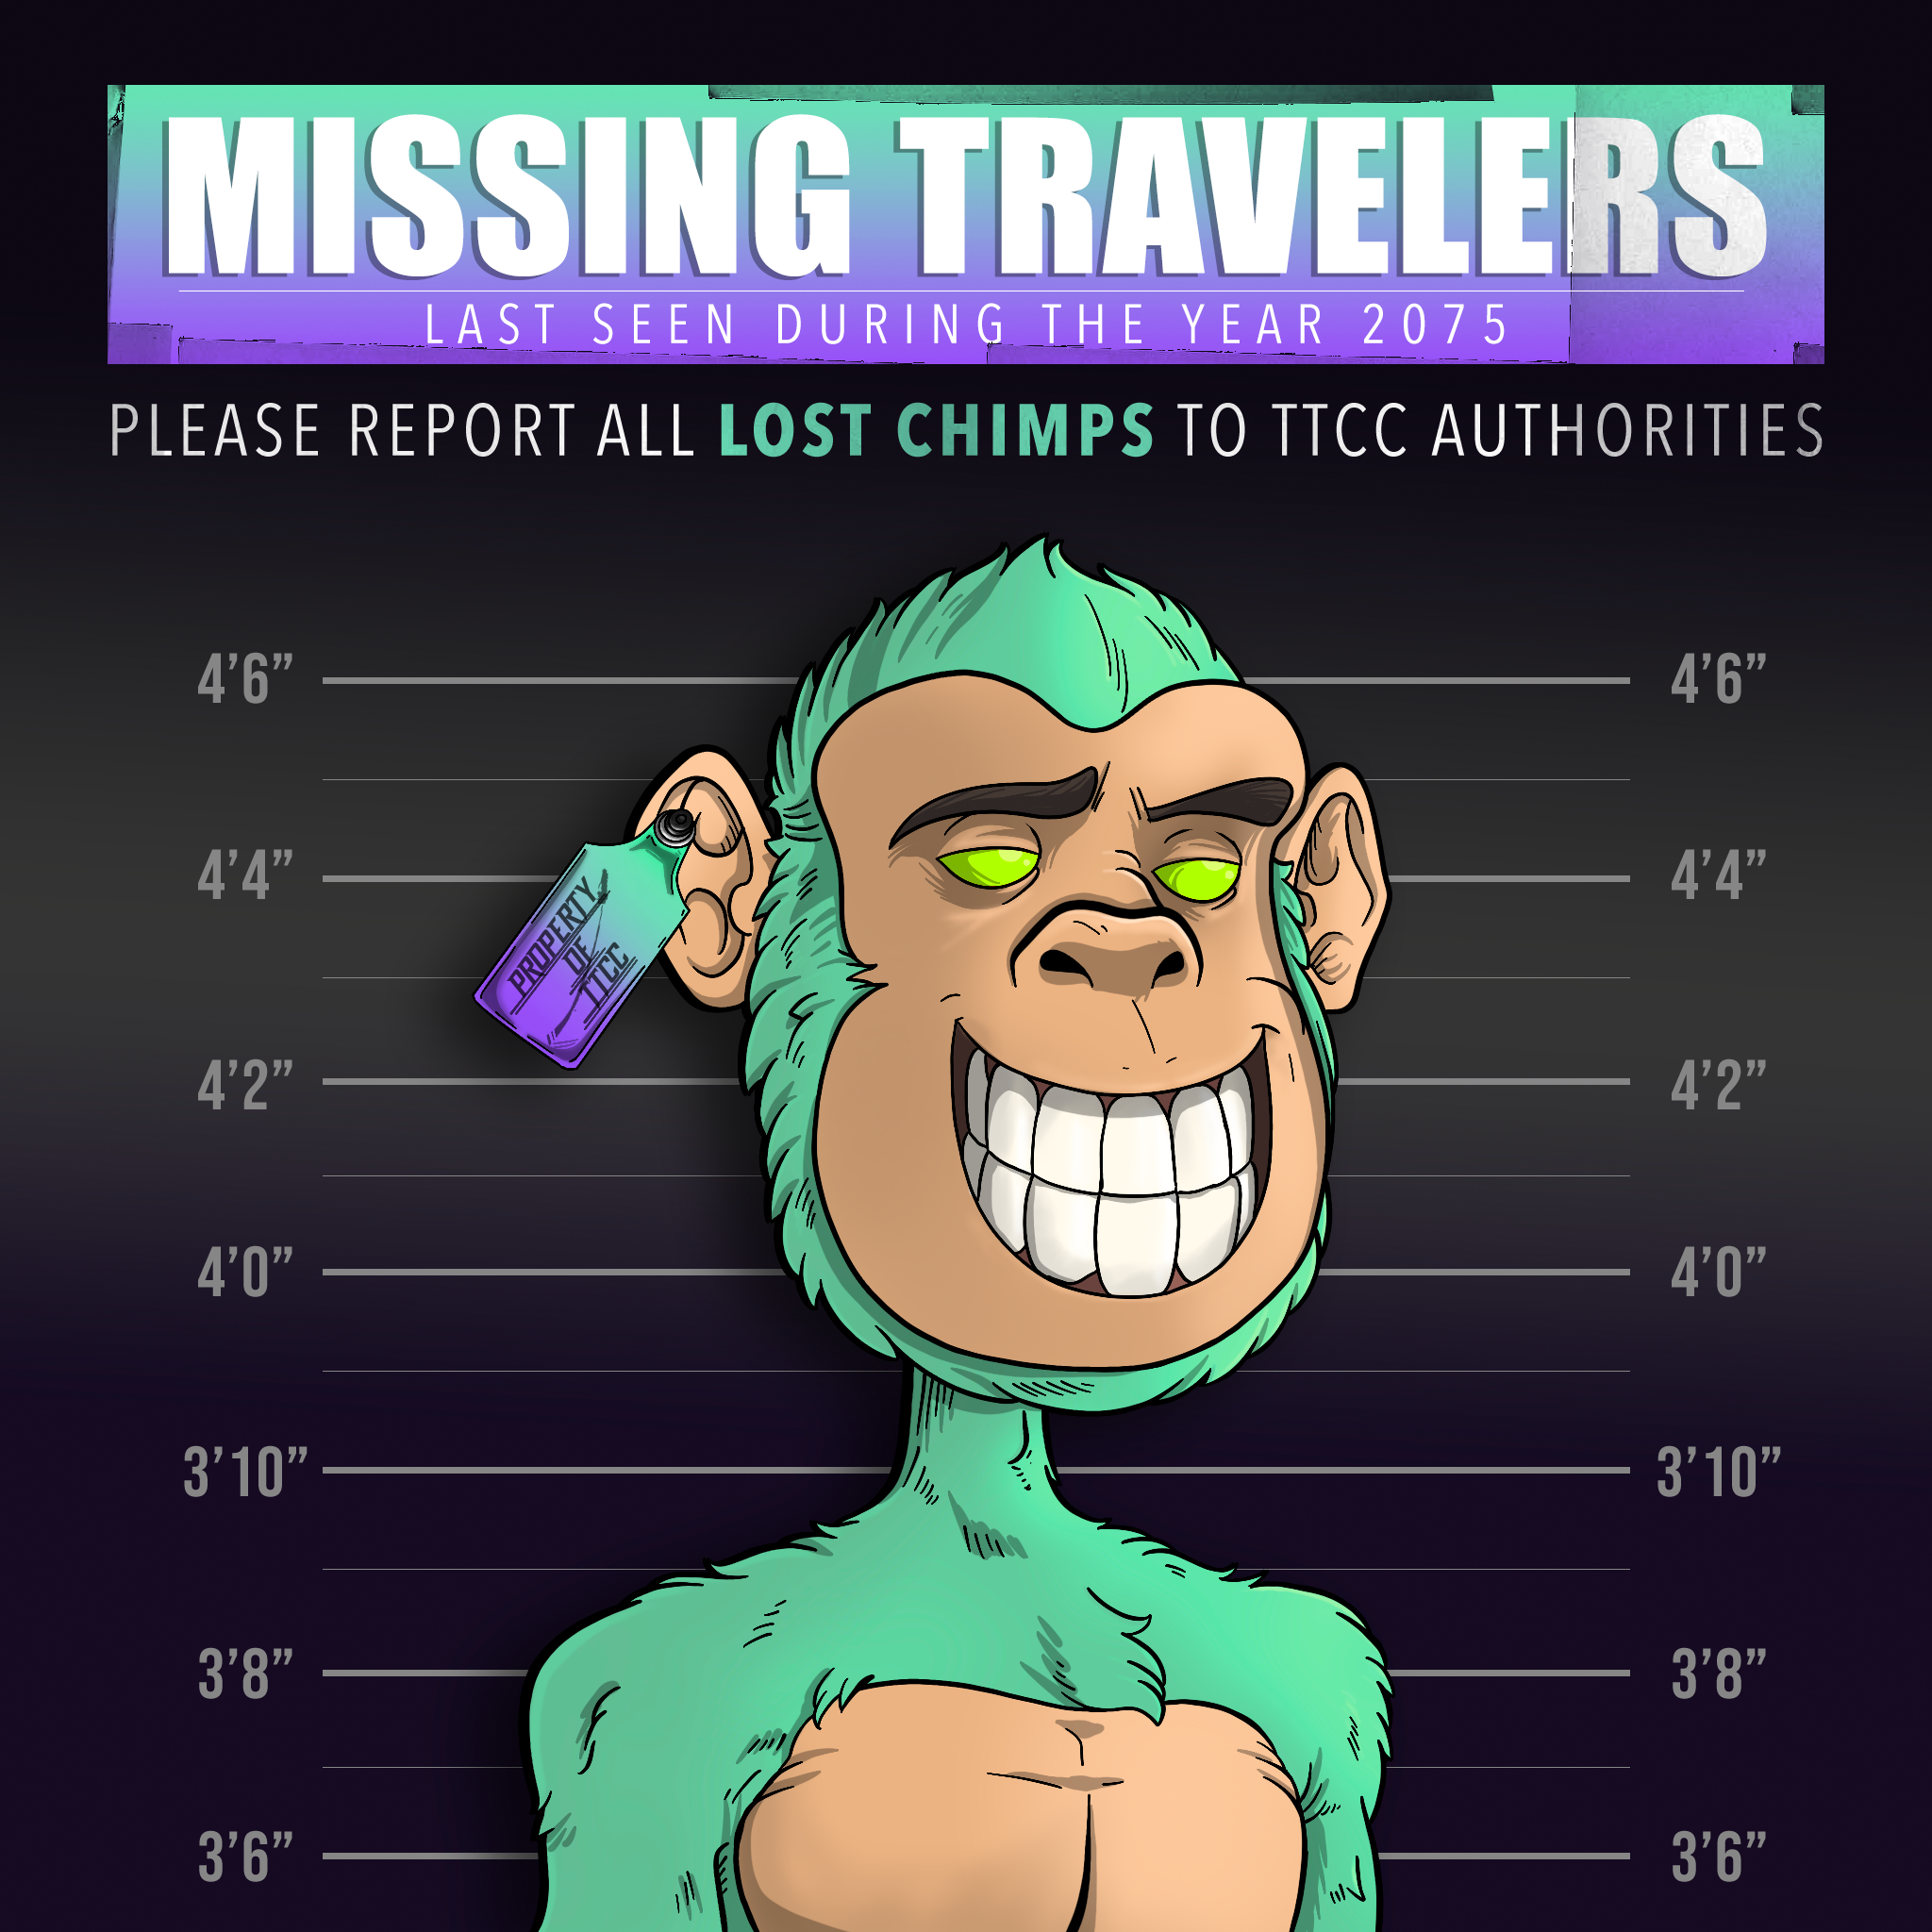 Lost Chimps #3756